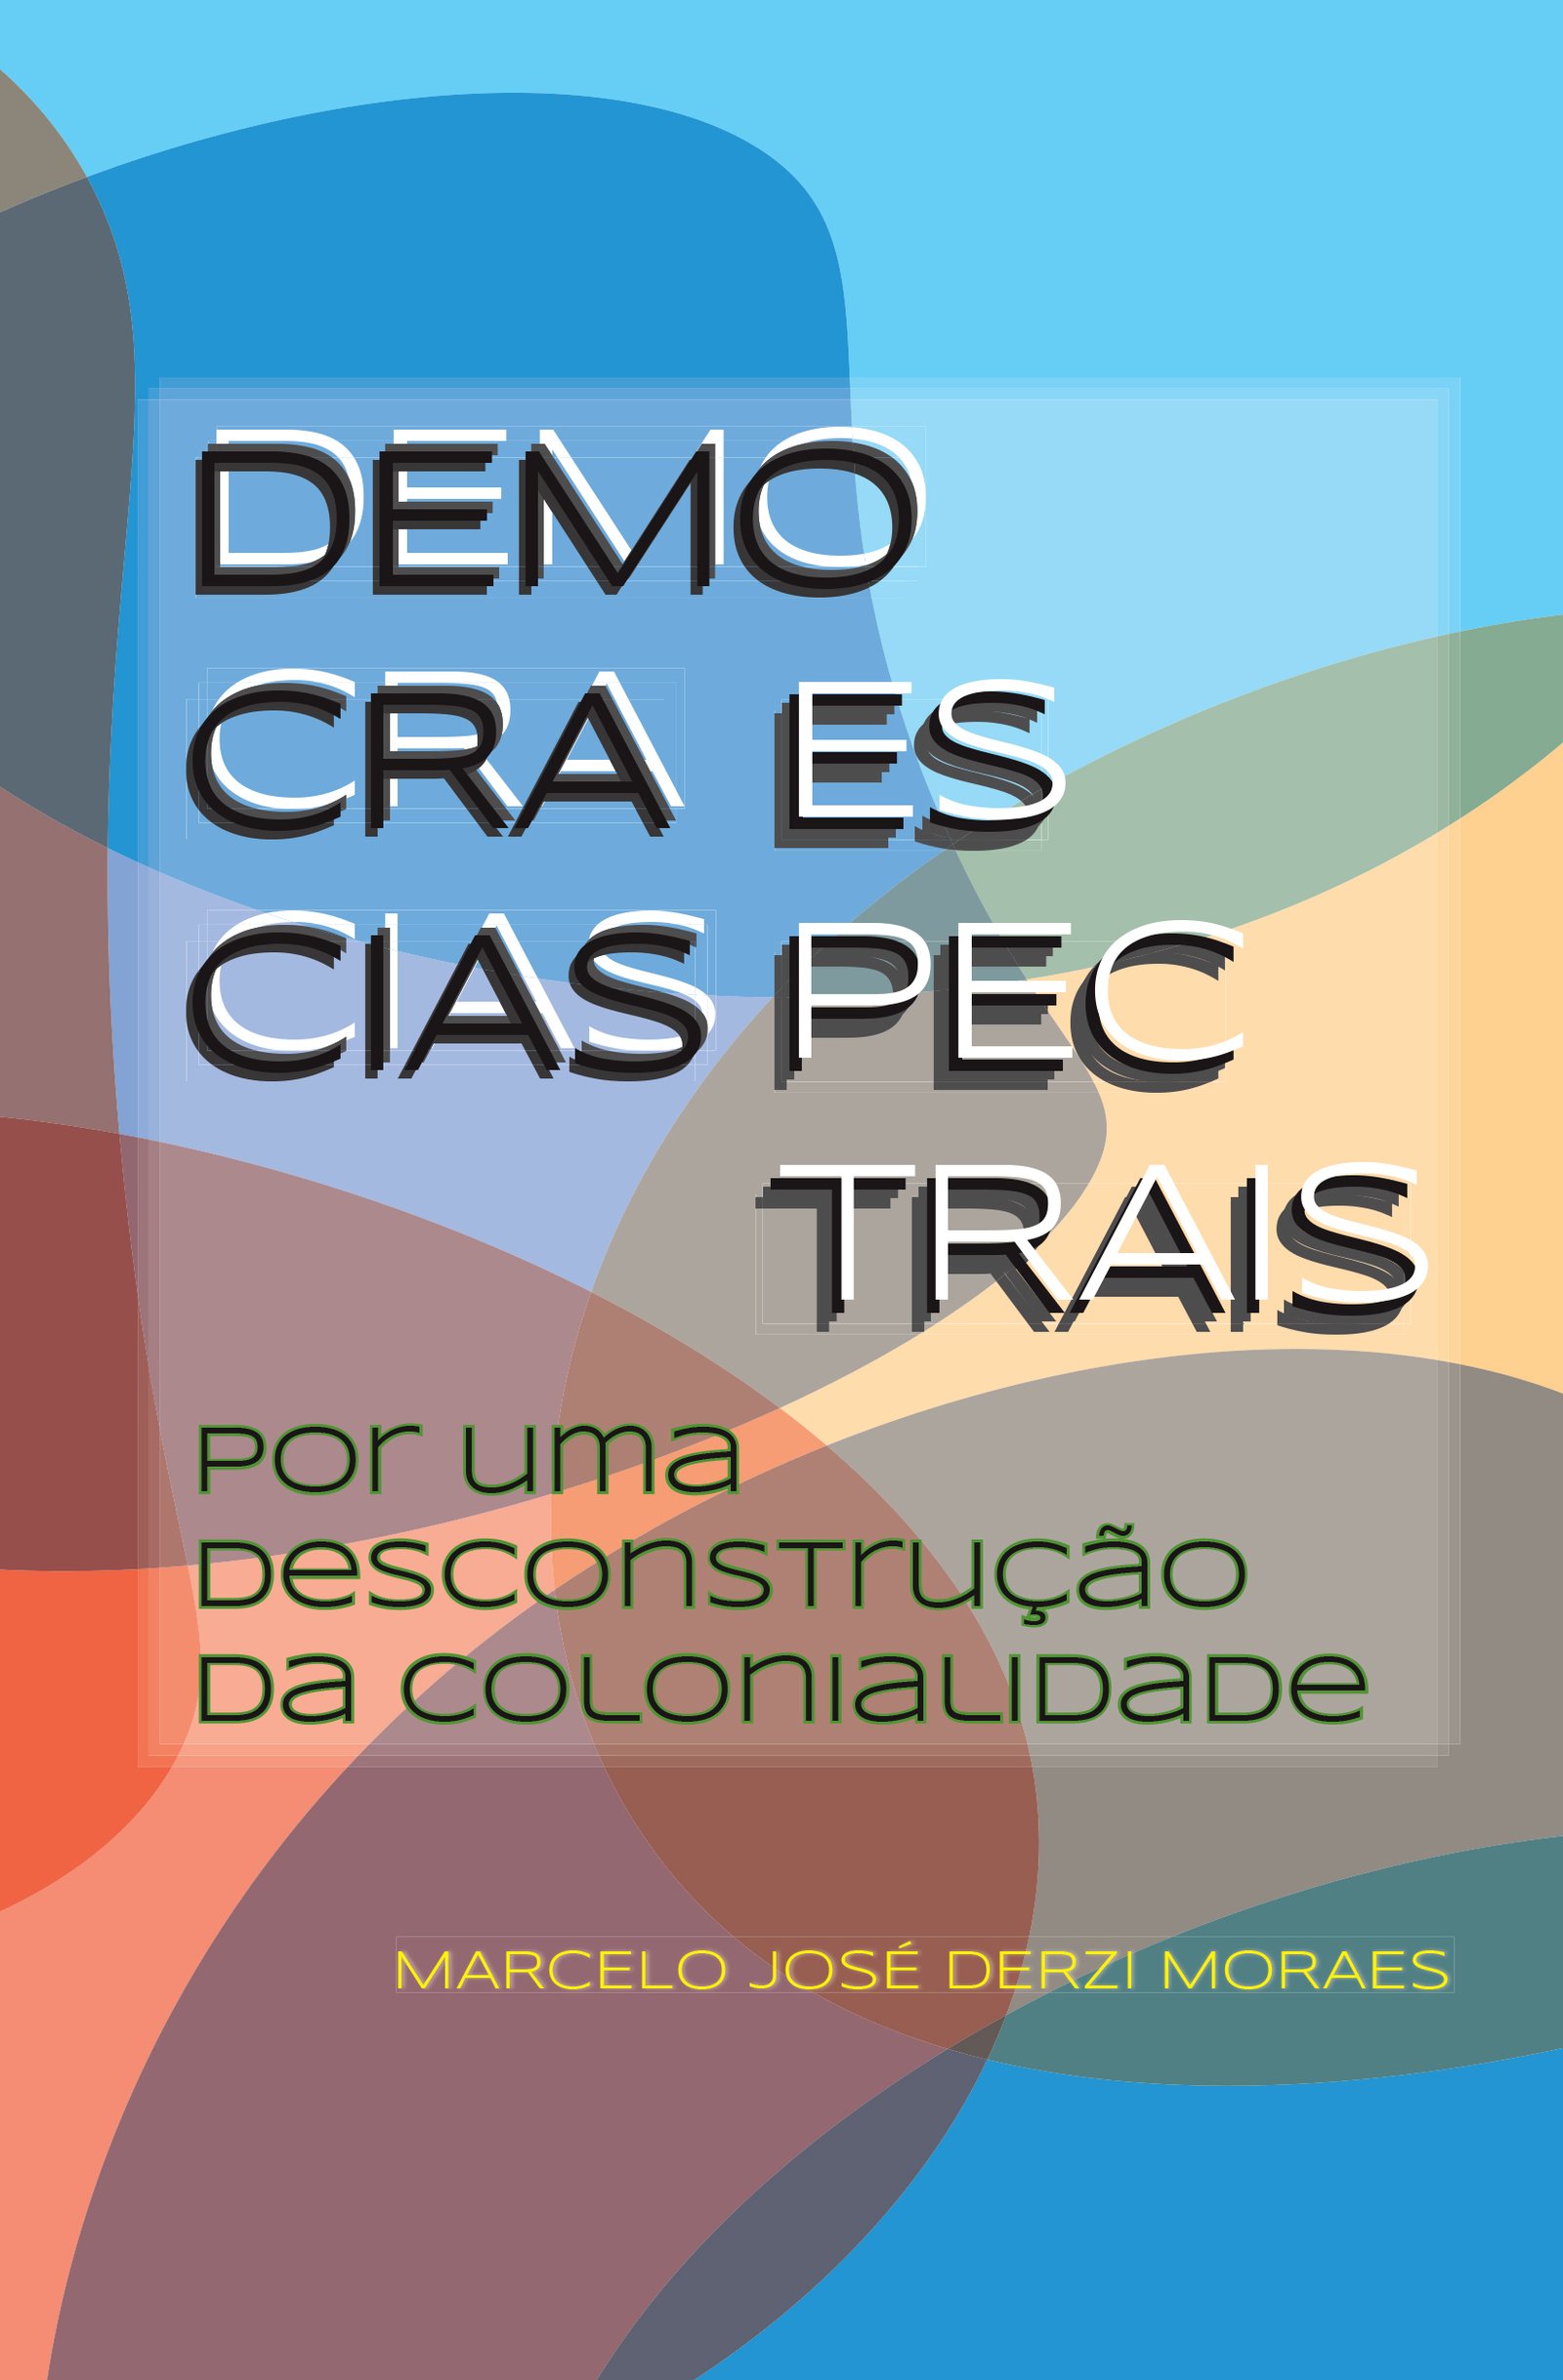 Democracias espectrais: por uma desconstrução da colonialidade - Nau Editora